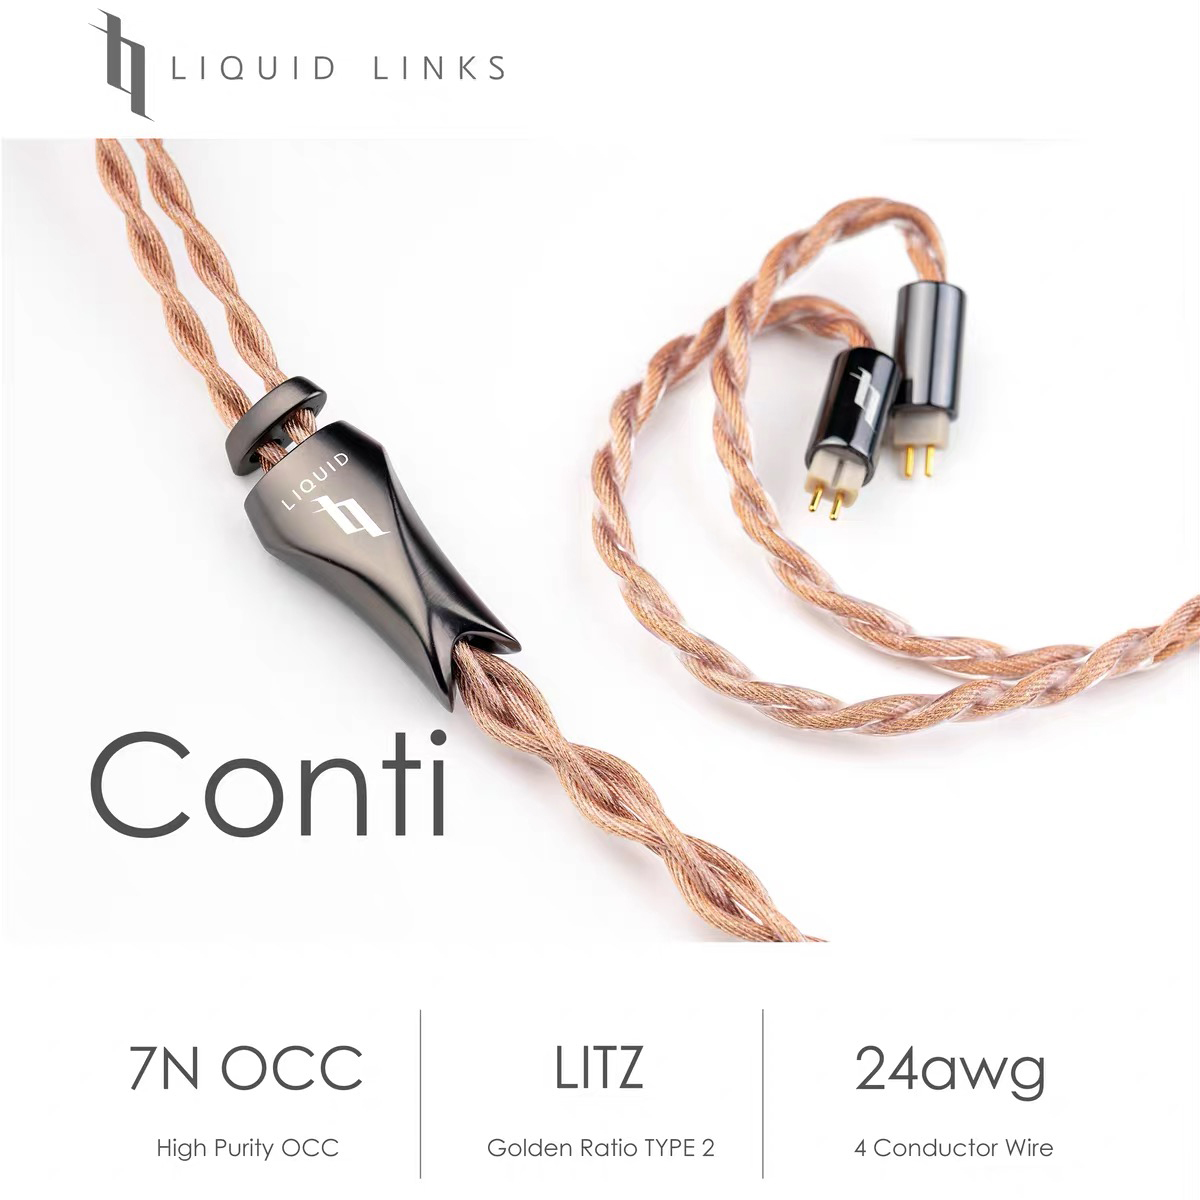 Conti丨LIQUID LINKS丨7N OCC Earphone Cable